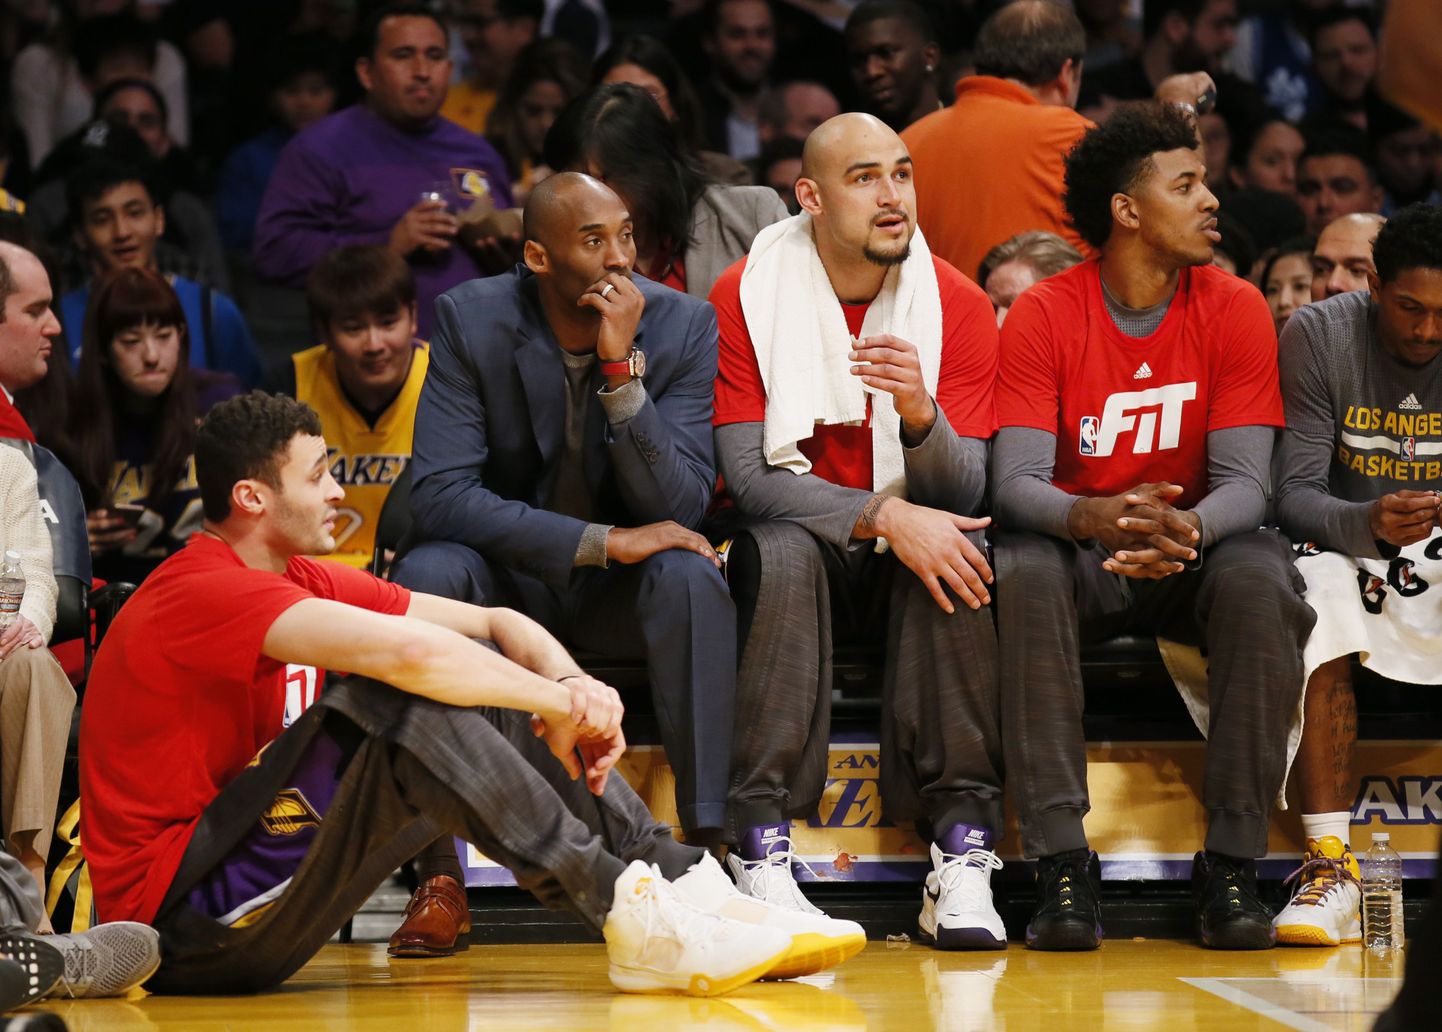 Los Angeles Lakersis on kord majas - viiekordne NBA meister Kobe Bryant istub pingil, kollanokk Larry Nance Jr põrandal.